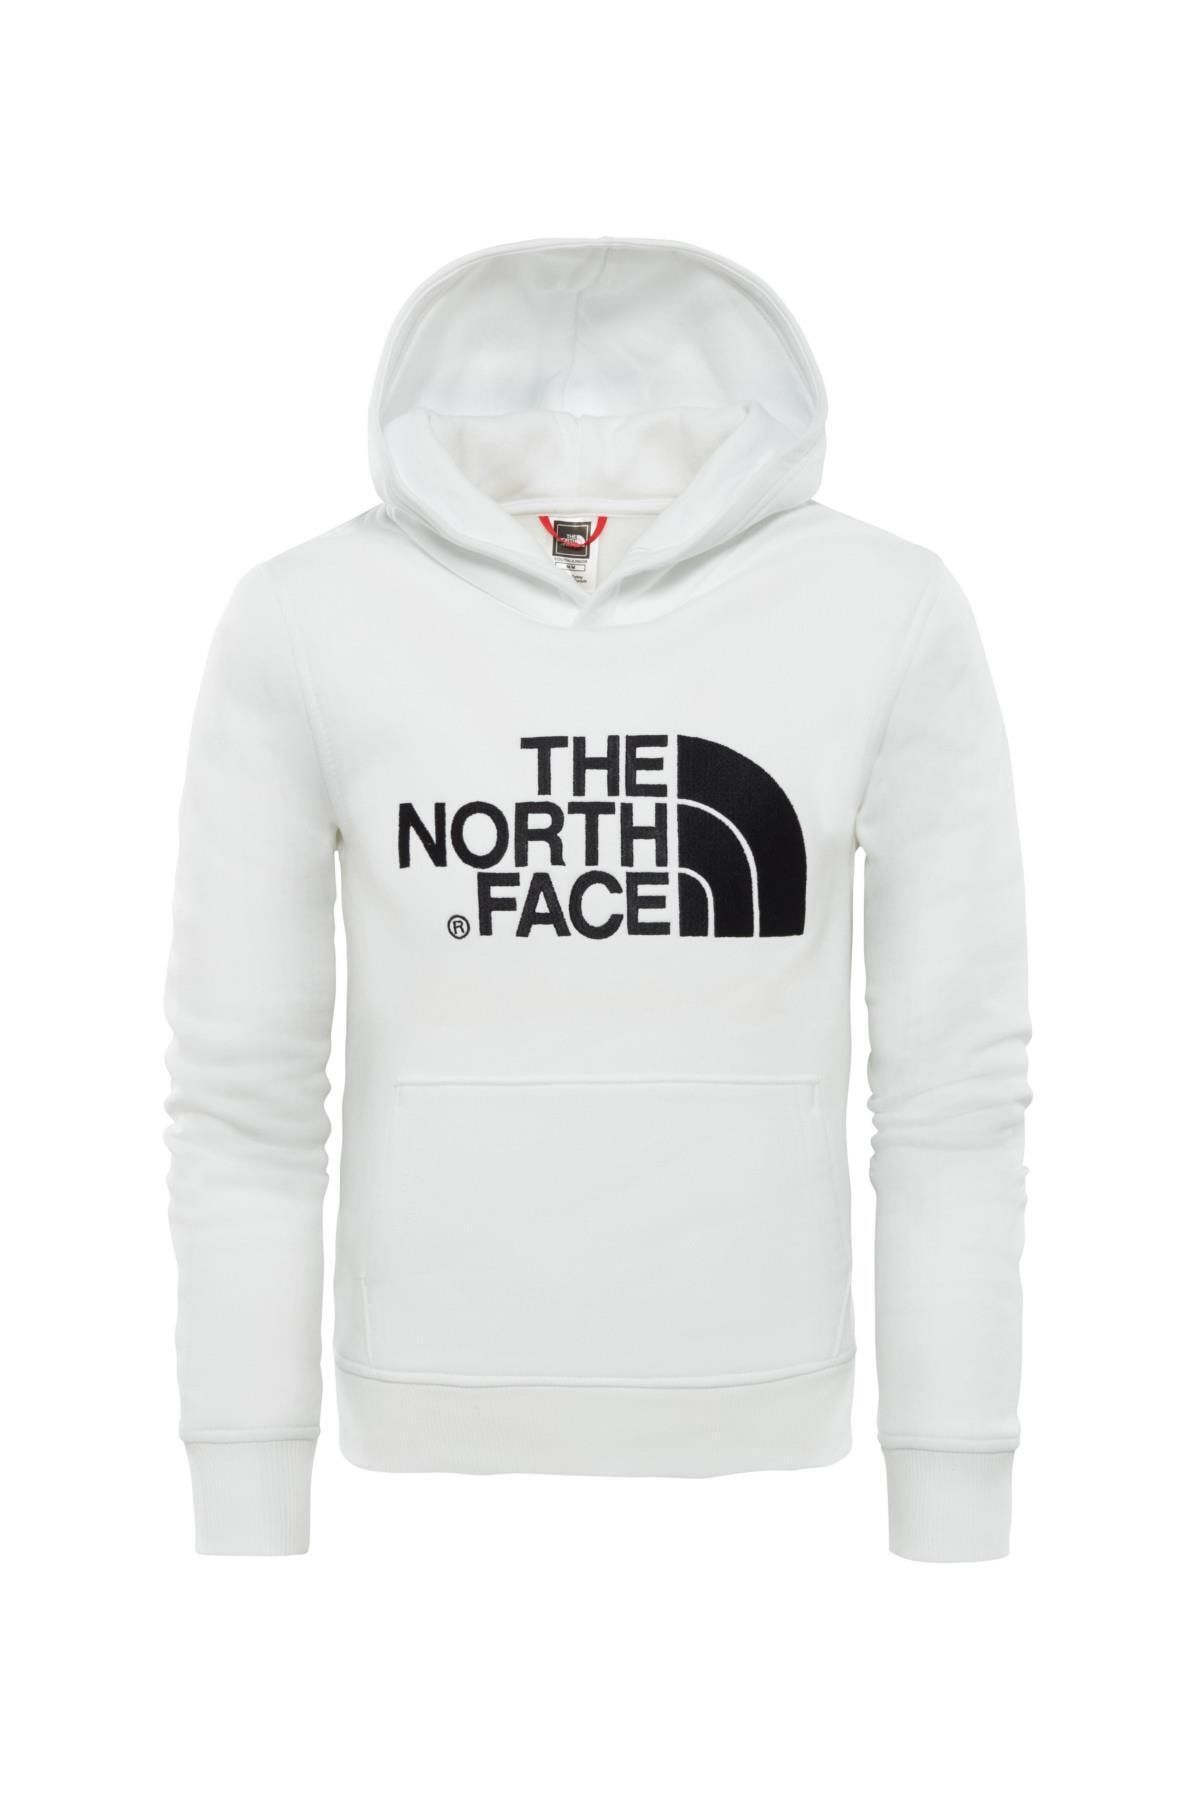 The North Face Drew Peak Pullover Hoodie Çocuk Sweatshirt